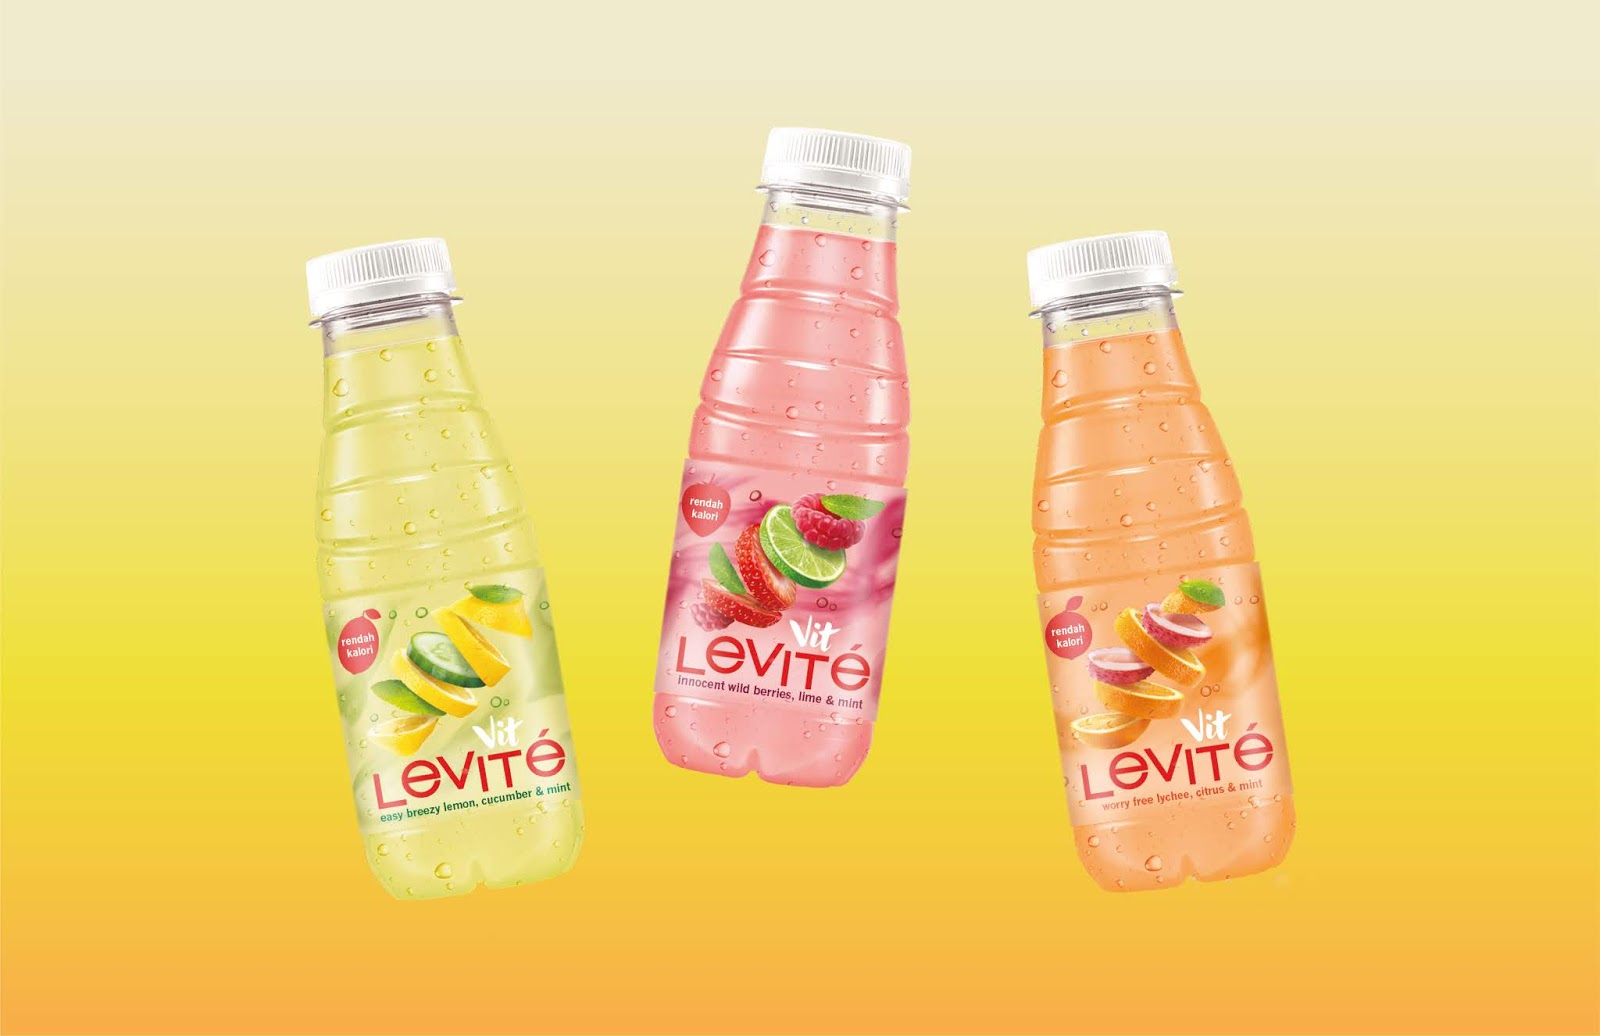 果汁包装设计常常用水果本身照片或插画表达(图4)